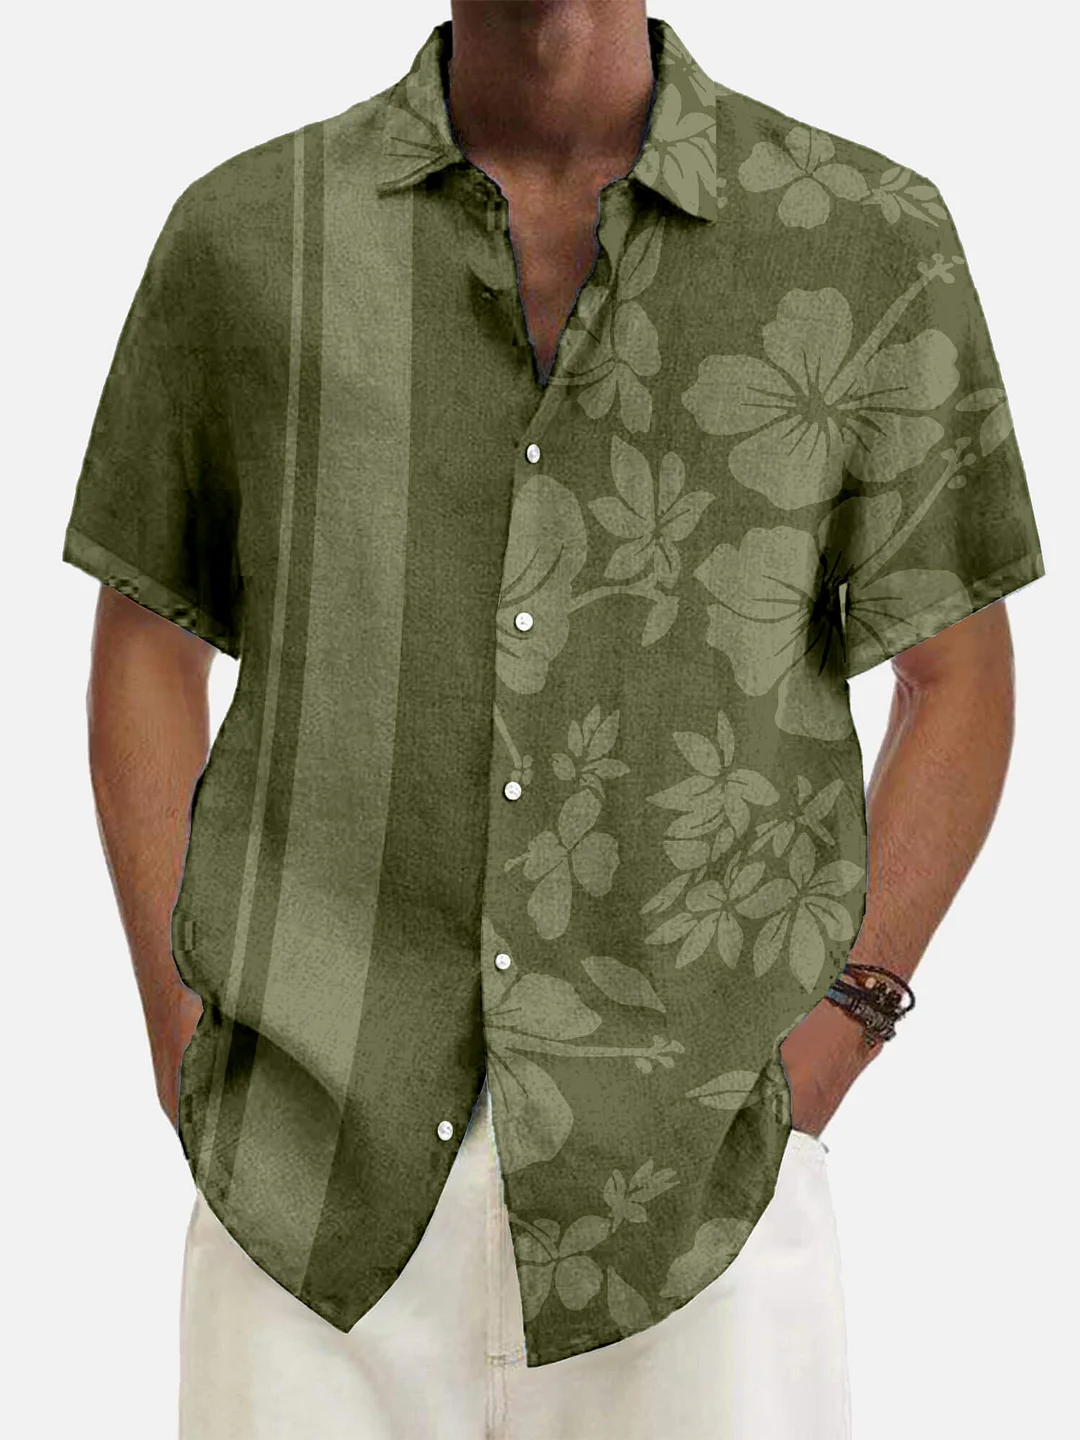 Men's Tiki Party Hawaiian Vacation Short Sleeve Printed Shirt